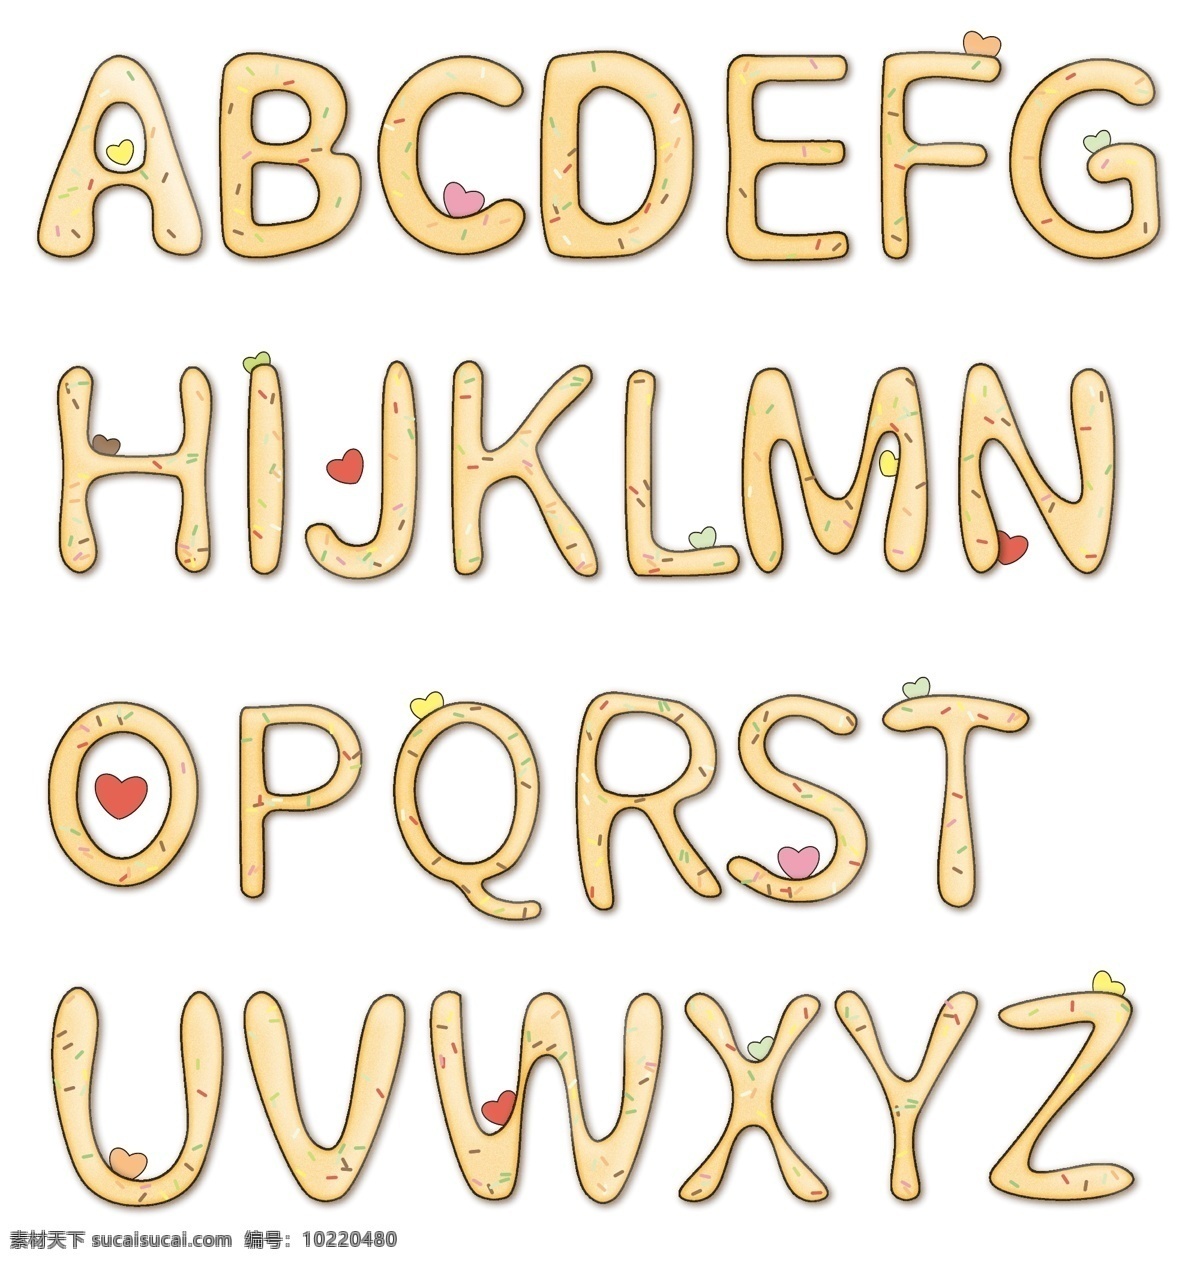 可爱 卡通 英语 字体 英文 字母 合集 矢量 全 可爱字母 卡通字母 爱心 字母素材 标题素材 巧克力饼干